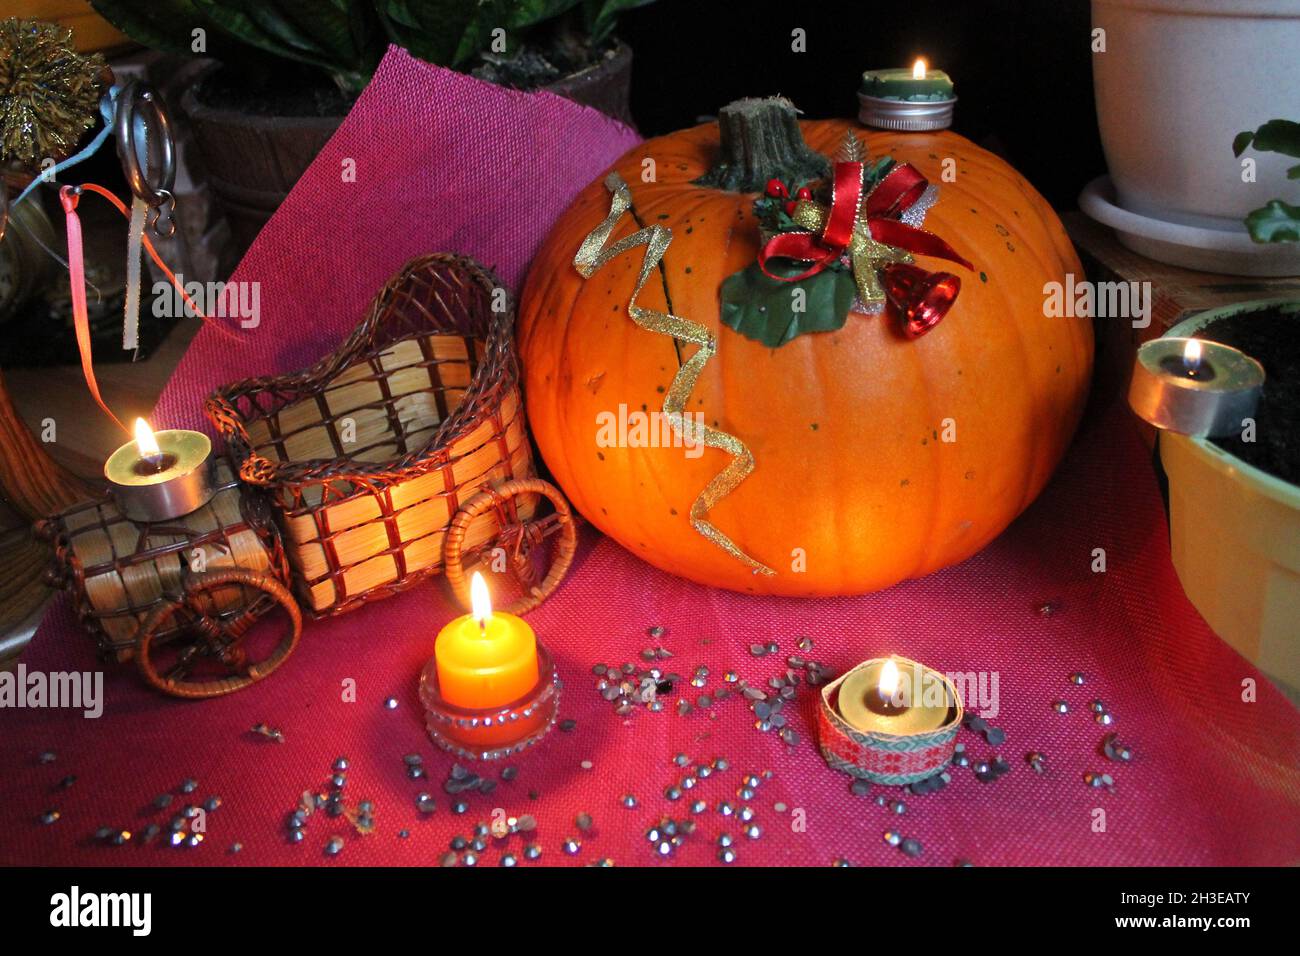 Calabaza naranja grande hermosa con velas para la decoración en vacaciones de Halloween Foto de stock